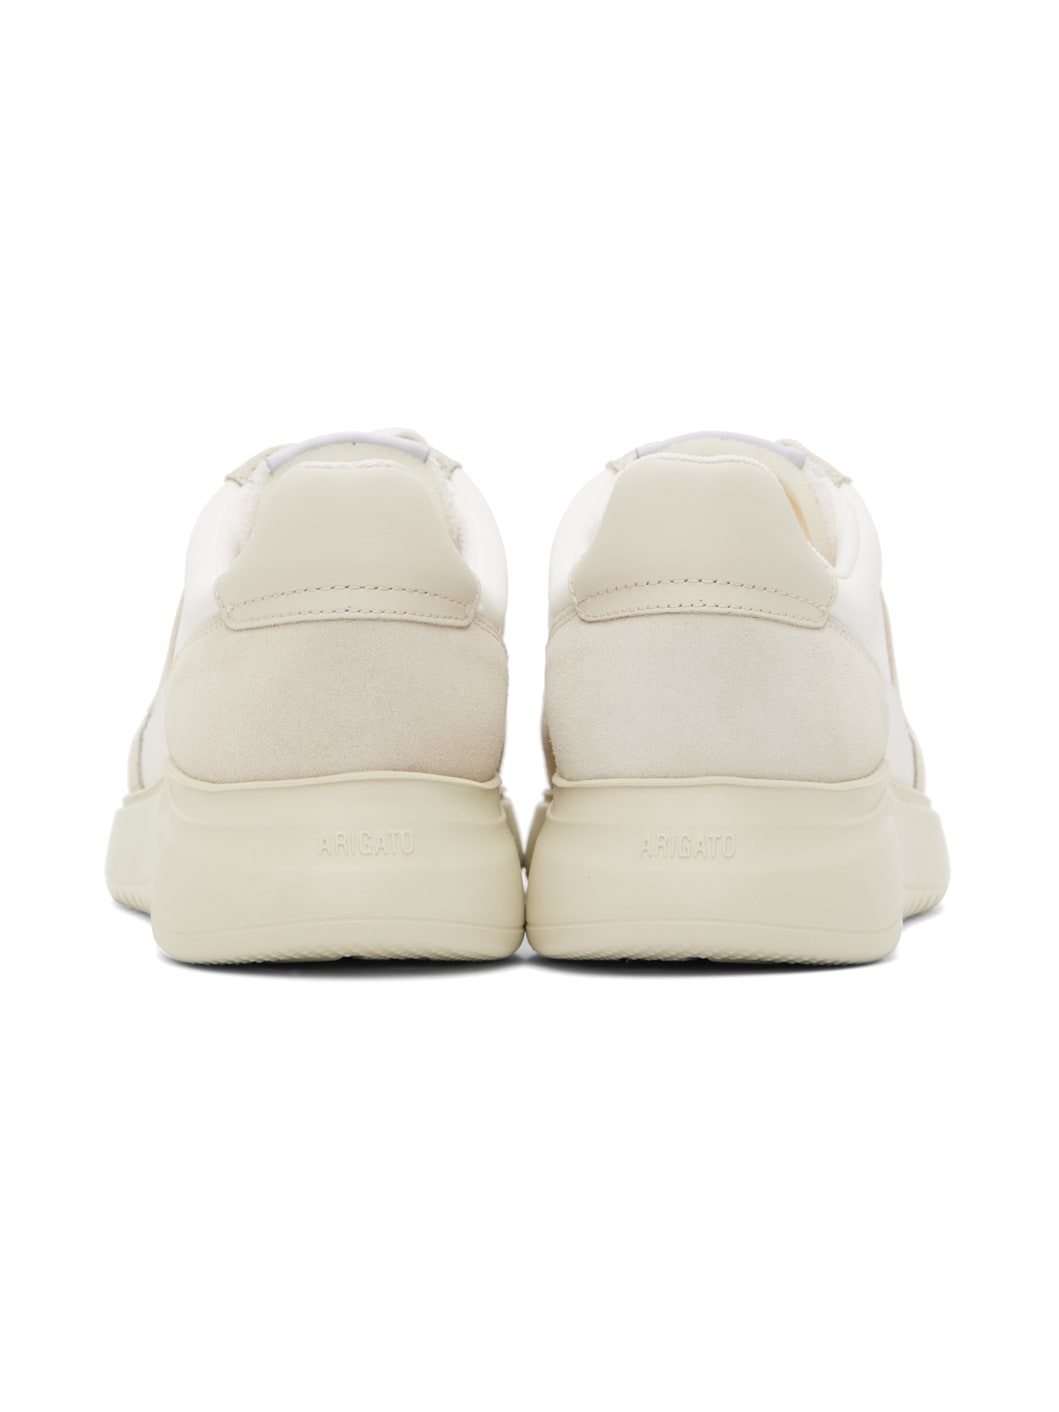 White & Beige Genesis Vintage Sneakers - 2